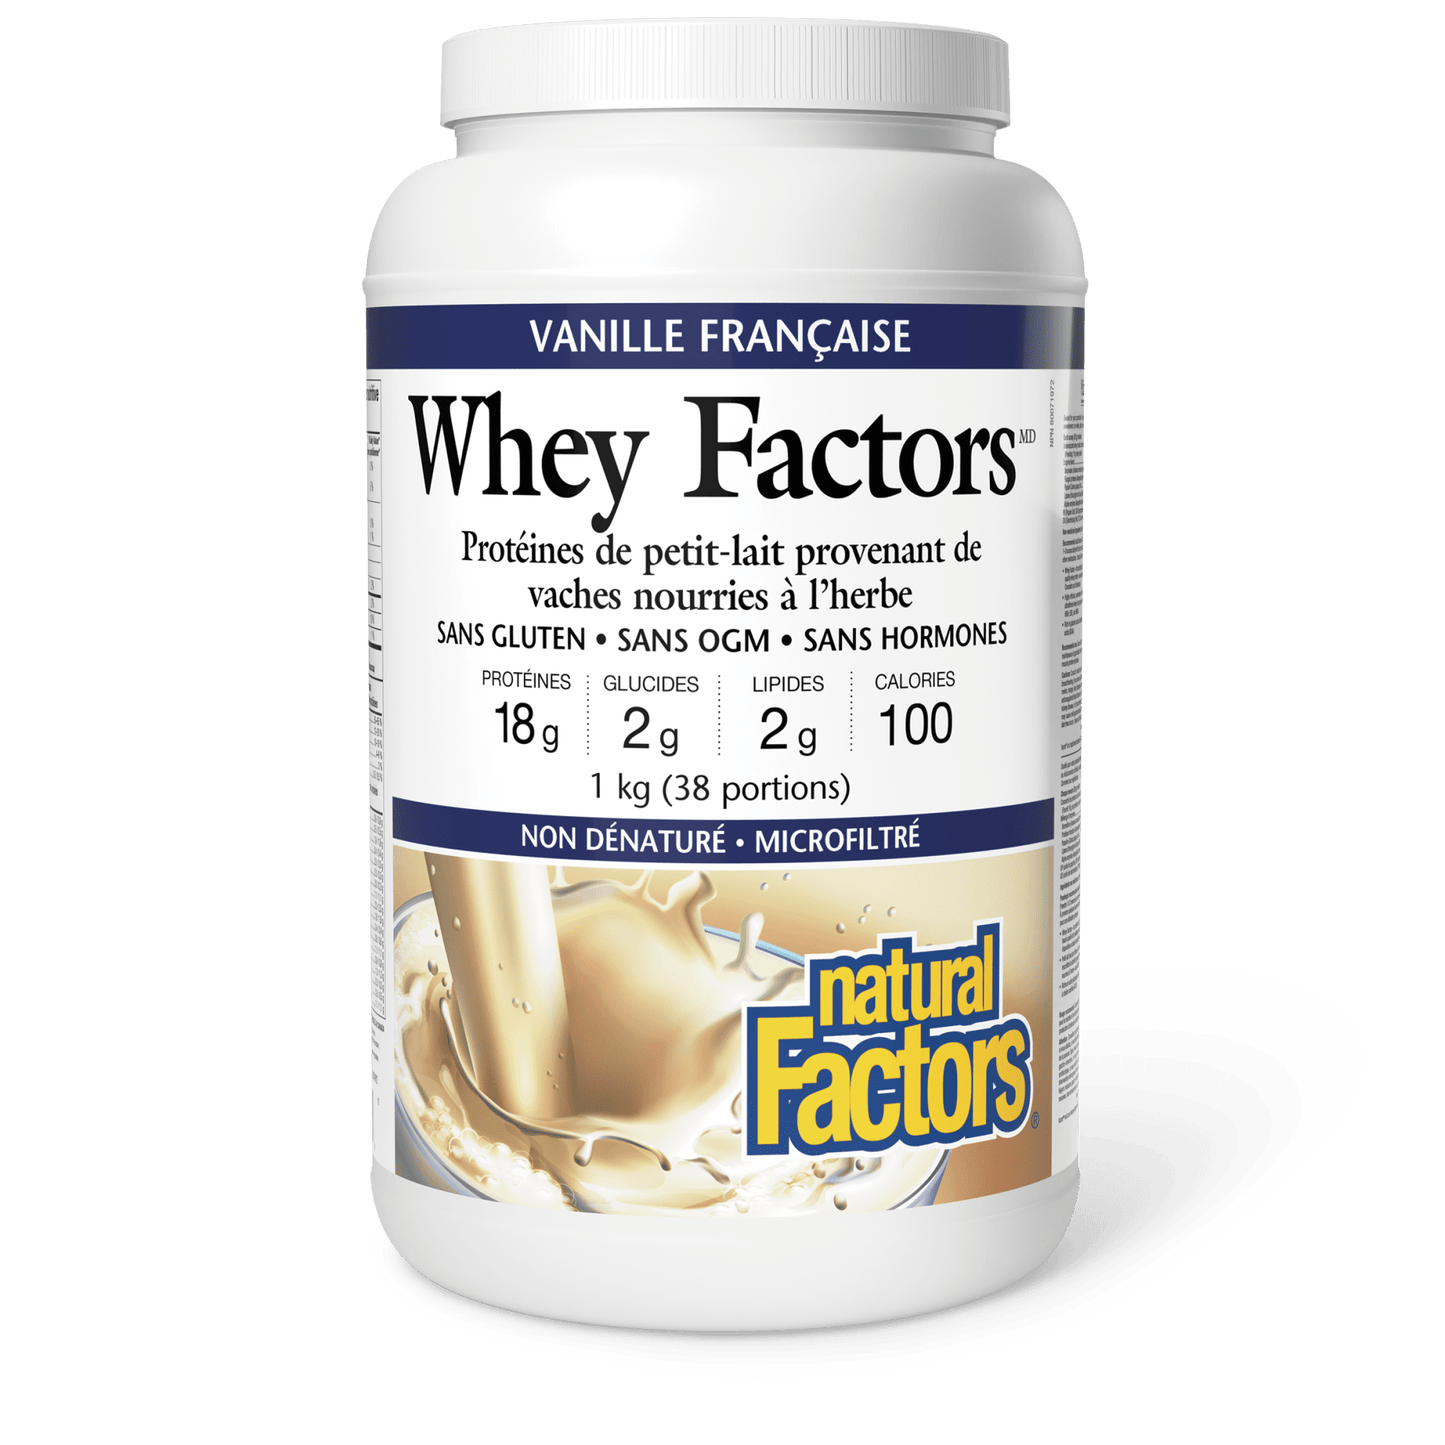 Whey Factors Protéine de petit-lait, vanille française, Natural Factors|v|image|2926